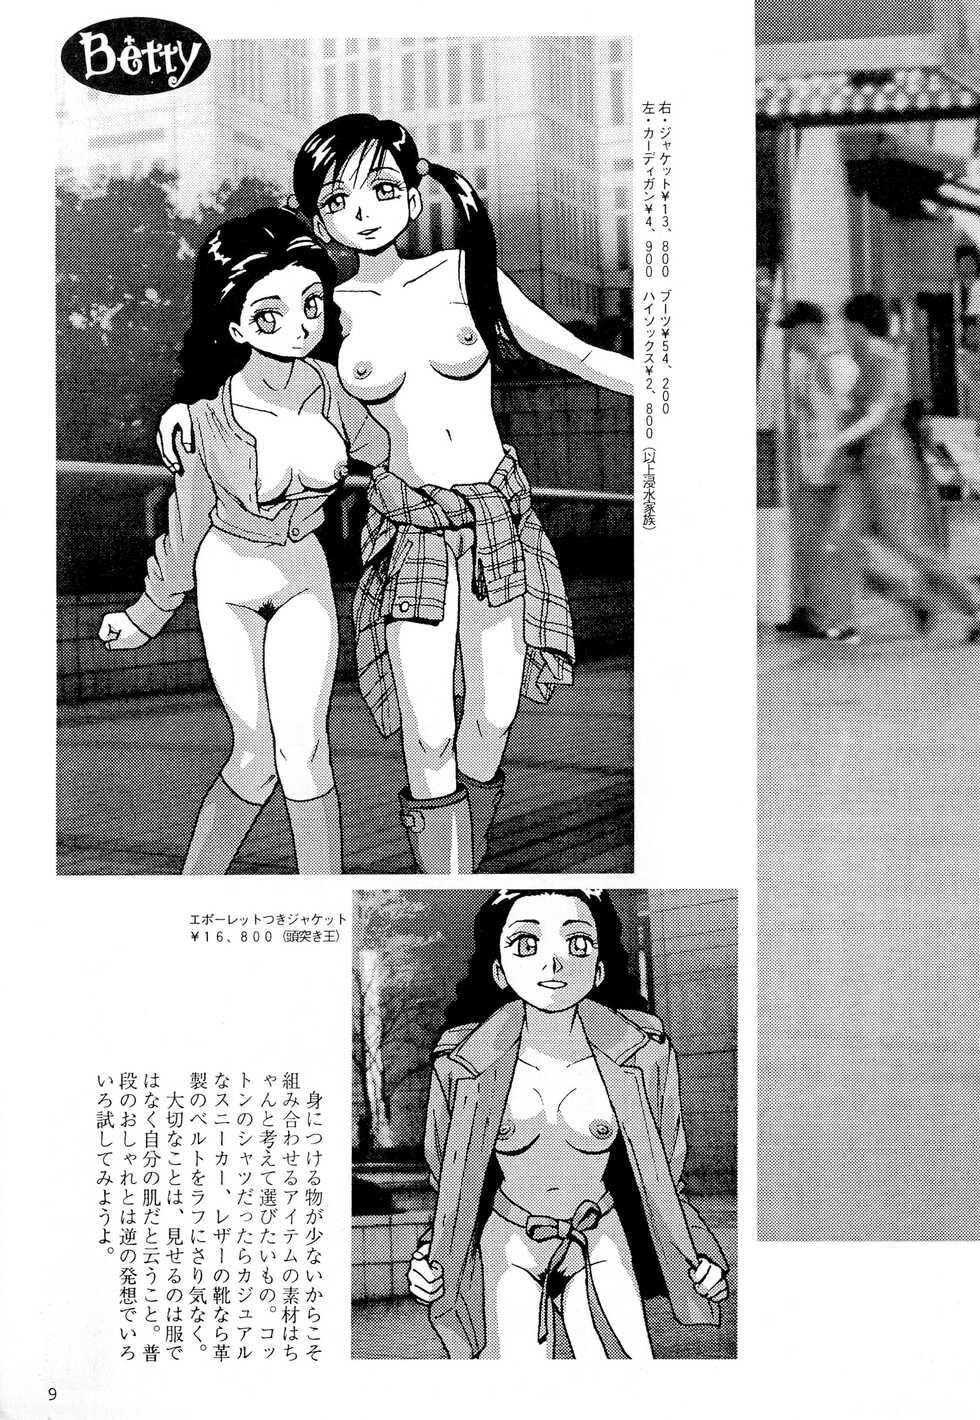 [NEW WORLD ORDER (Anda Daichi)] Betty - Page 11